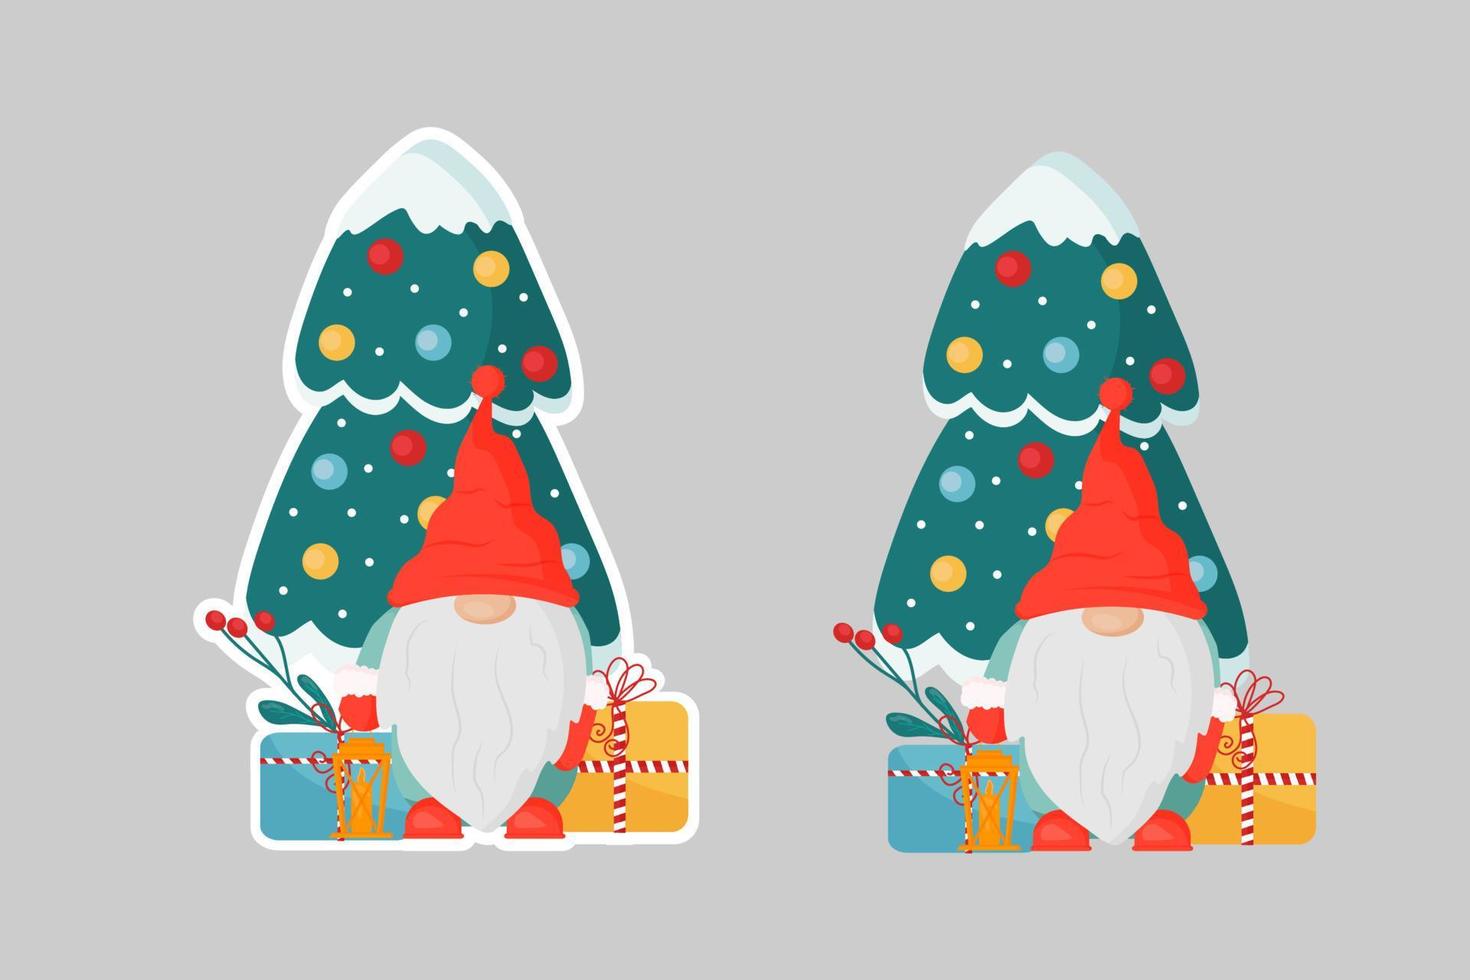 skandinavische weihnachtszwerge mit geschenken, tannenzweigen, roten beeren, einem weihnachtsbaum. Verwendung für Druck, Cover-Art, Poster, Postkarte, Design, Scrapbooking, Aufkleber. das neue Jahr 2023 feiern. vektor